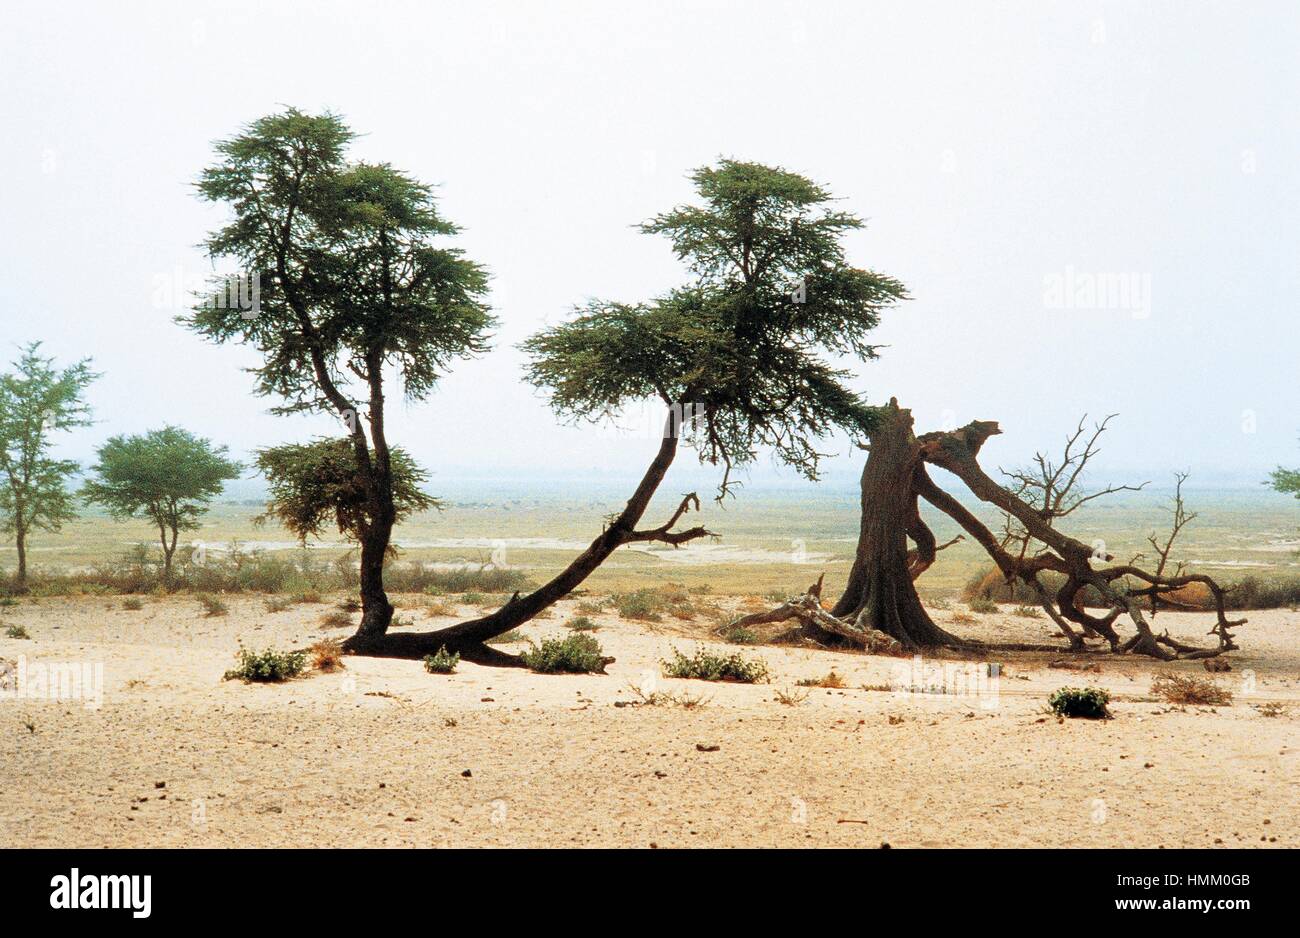 Drought-damaged trees, Burkina Faso. Stock Photo